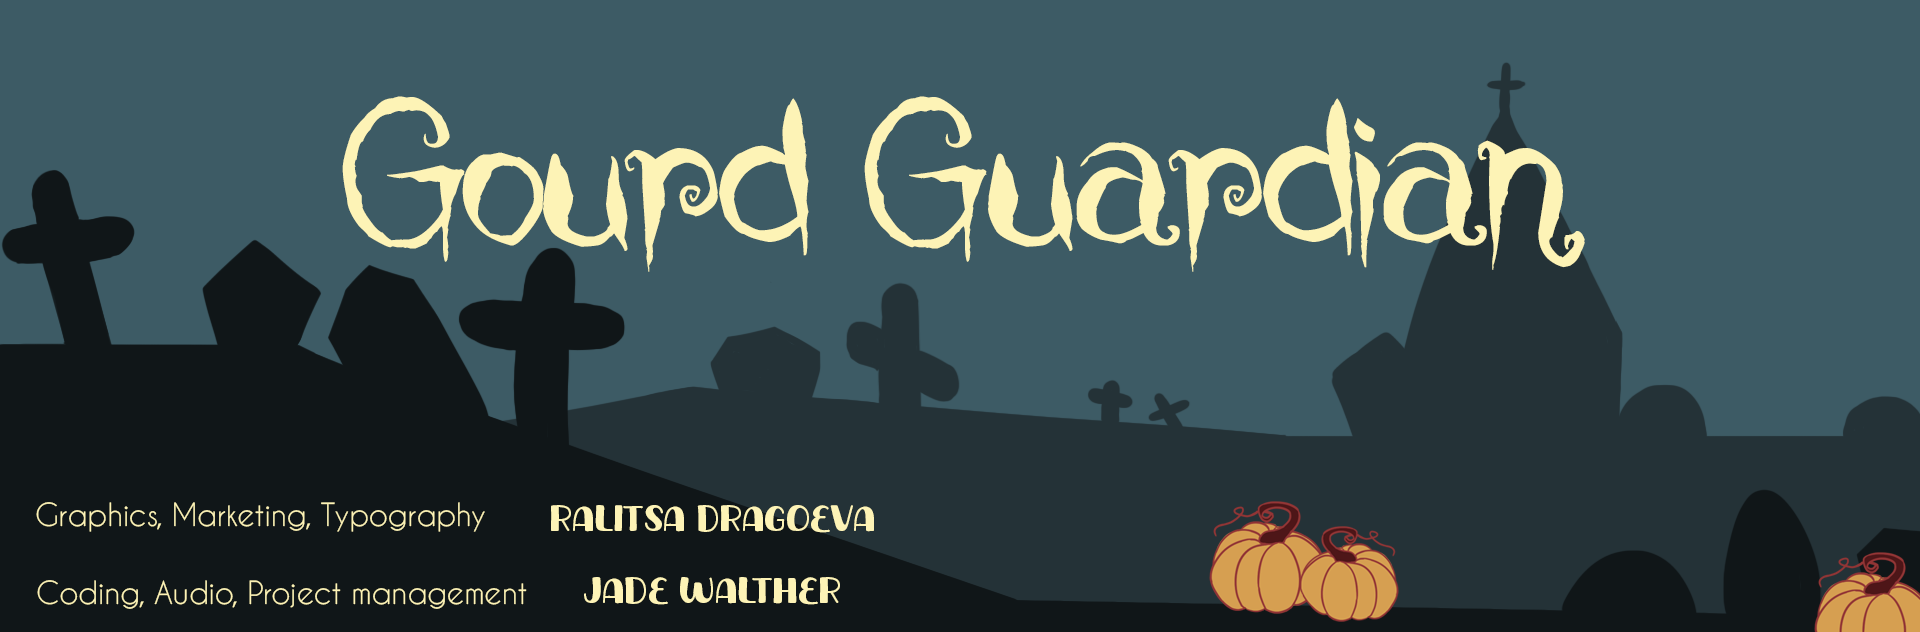 Gourd Guardian